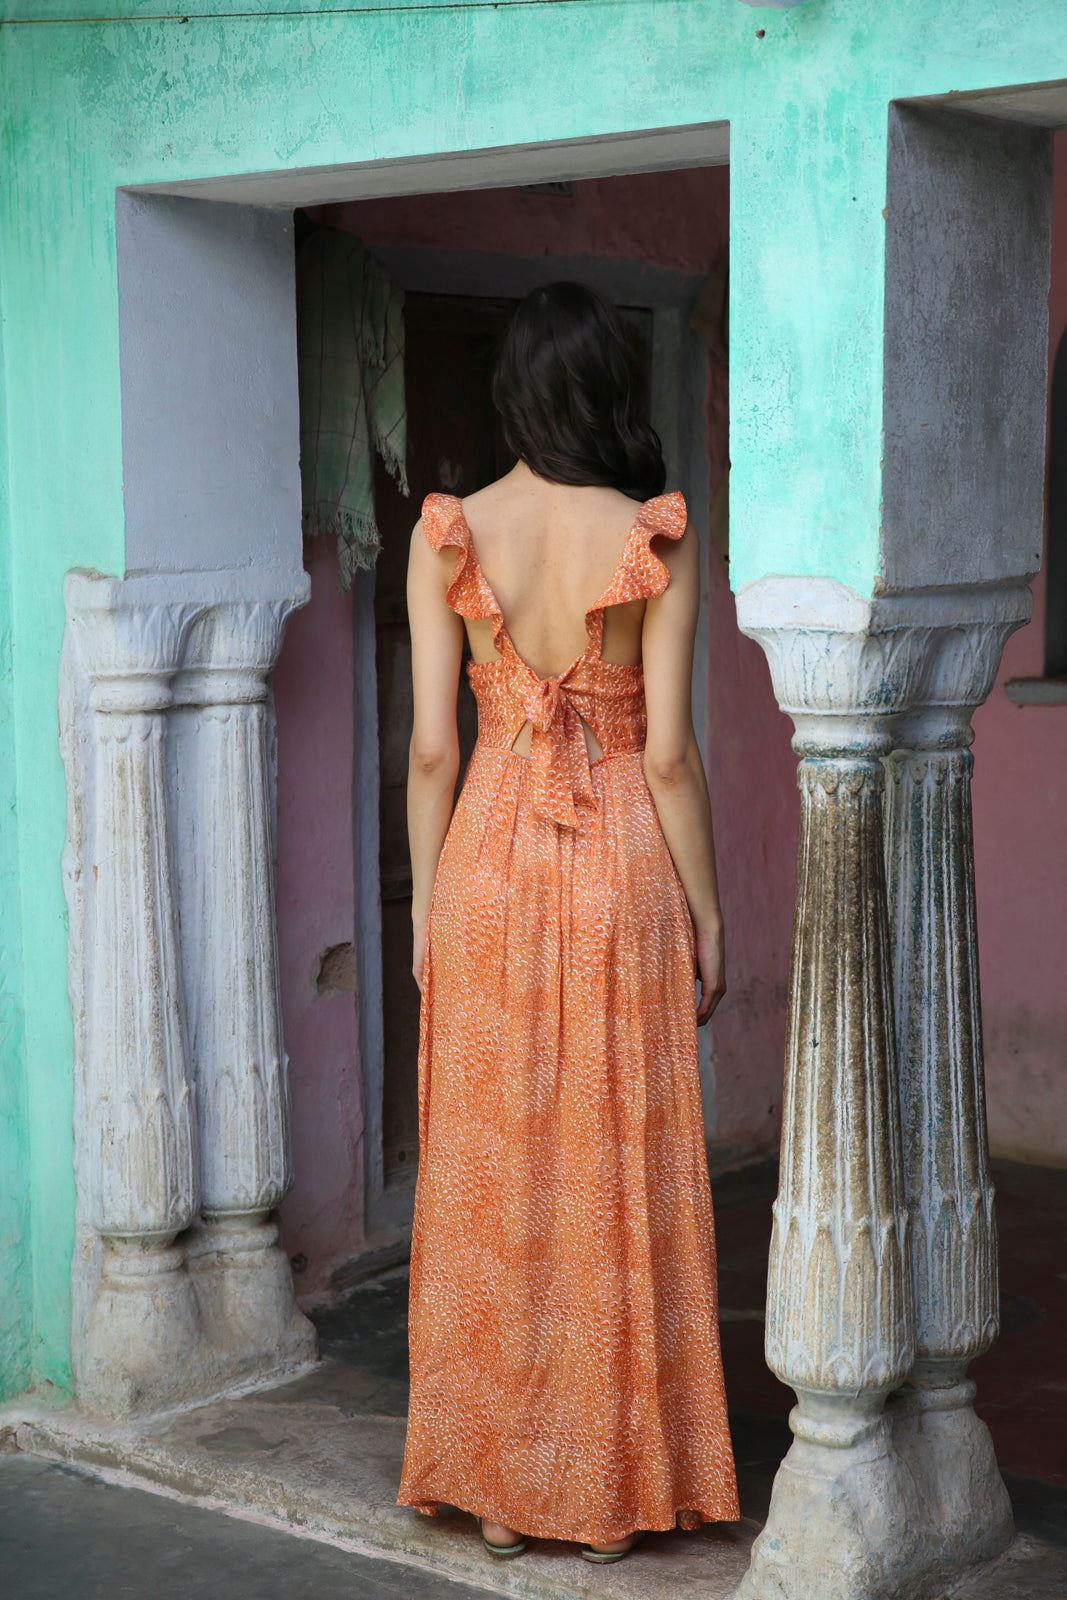 Orange Lolita Dress